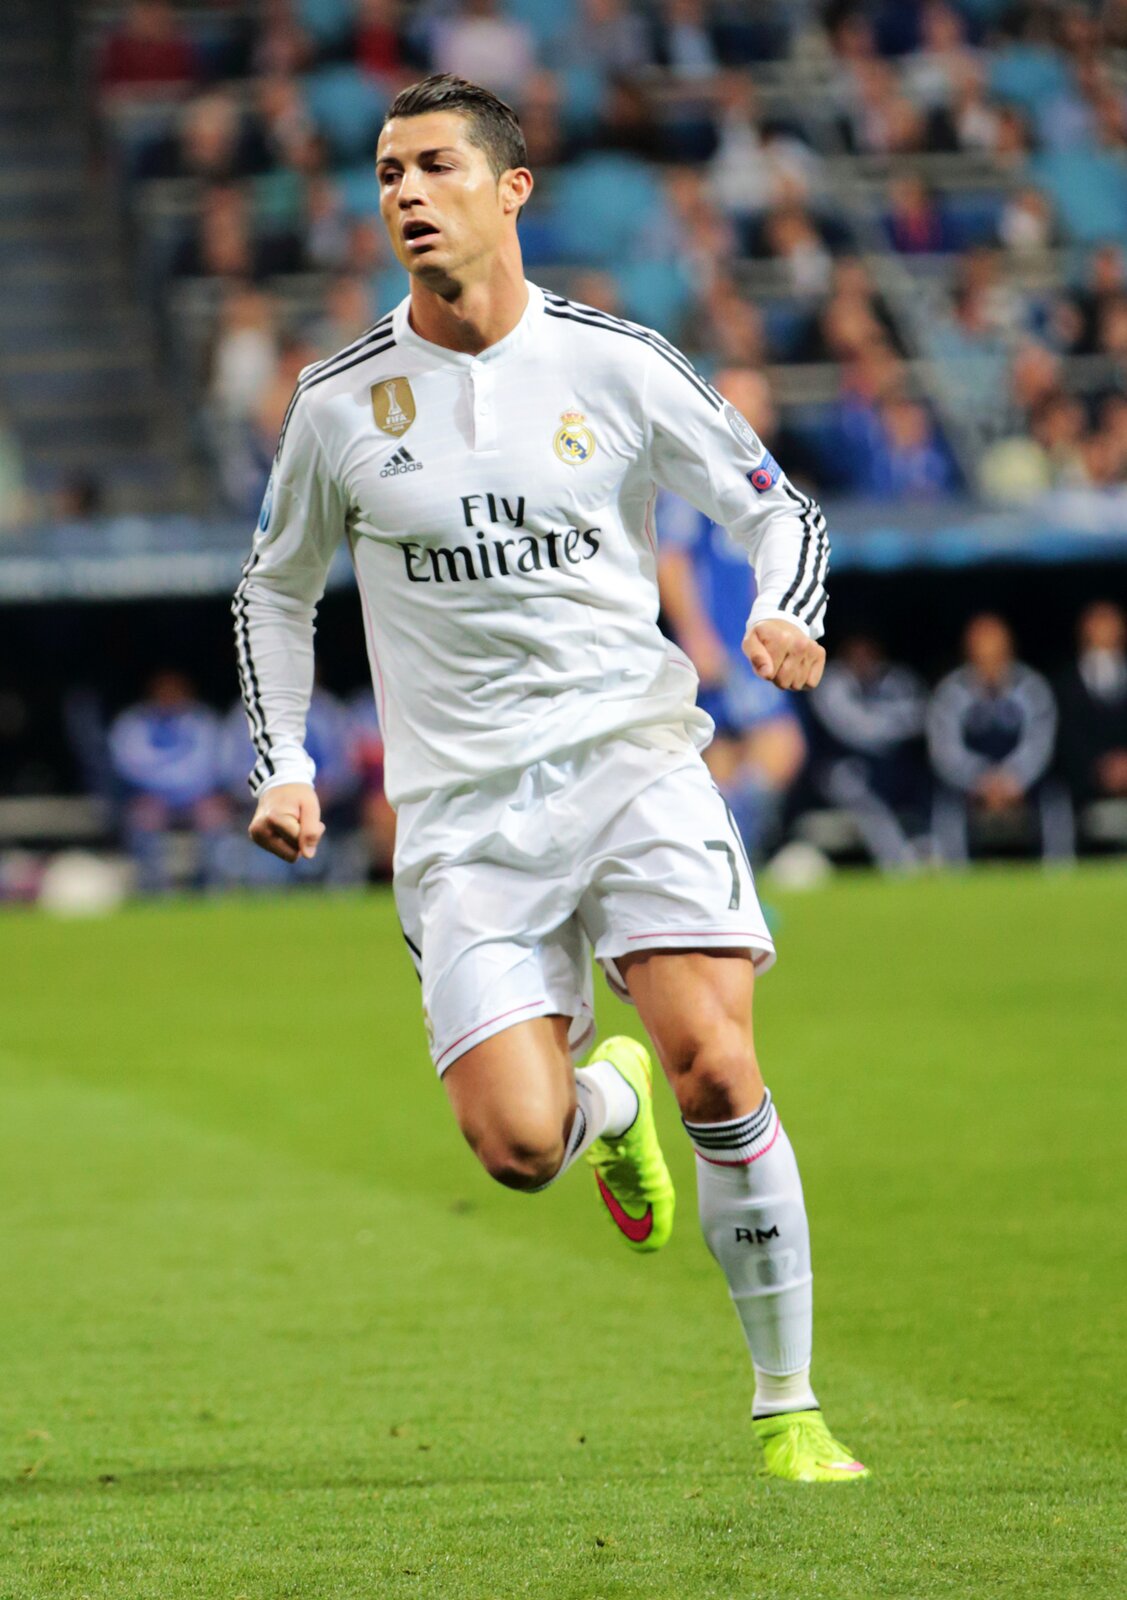 Na zdjęciu został przedstawiony Cristiano Ronaldo. Mężczyzna ma czarne włosy. Są zaczesane gładko do tyłu. Ma otwarte delikatnie usta. Patrzy w prawą stronę.  Jest ubrany w białą koszulkę z długim rękawem. Ma czarne trzy paski na rękawach. Z przodu na bluzce, na środku znajduje się napis: „Fly  emirates”. Po prawej stronie jest logo firmy Adidas. Powyżej został umieszczony złoty znaczek, gdzie znajduje się napis Fifa. Po lewej stronie jest herb klubu. Piłkarz ma krótkie białe spodenki oraz białe getry z czarnymi prążkami u góry. Na stopach ma jaskrawe korki z czerwonym logiem Nike. Piłkarz ma zaciśnięte pięści u obu rąk. Prawa noga jest zgięta i uniesiona do góry. Stoi na lewej nodze. Biegnie po zielonej murawie. W tle są rozmyte trybuny sportowe.